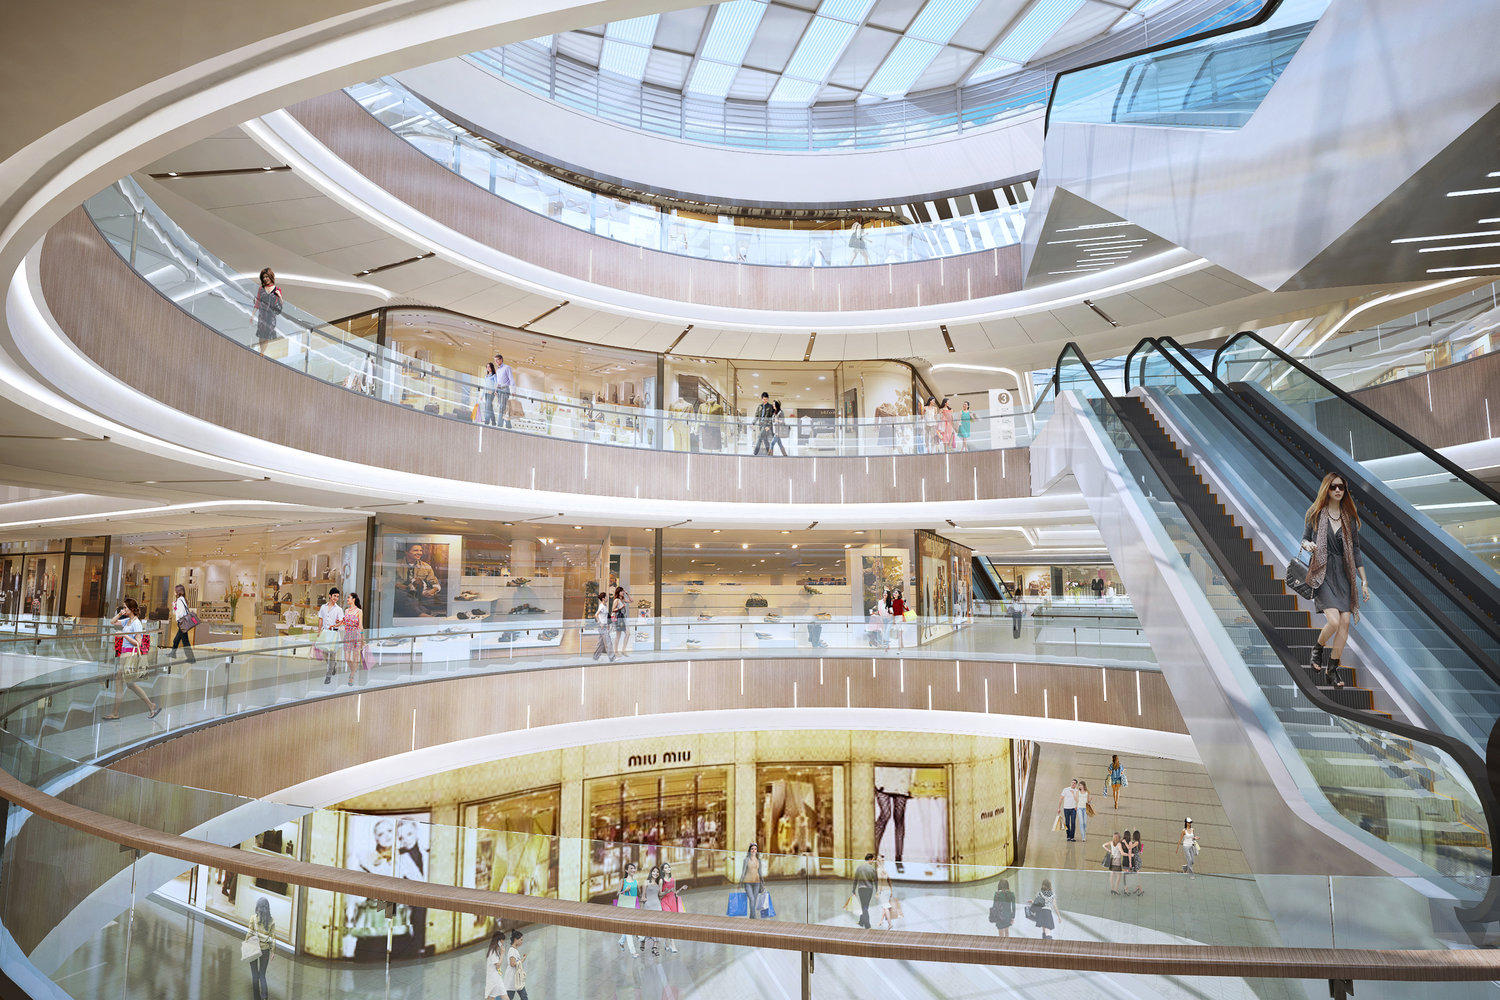 郑州熙地港购物中心采用无柱设计确保整体感觉通透